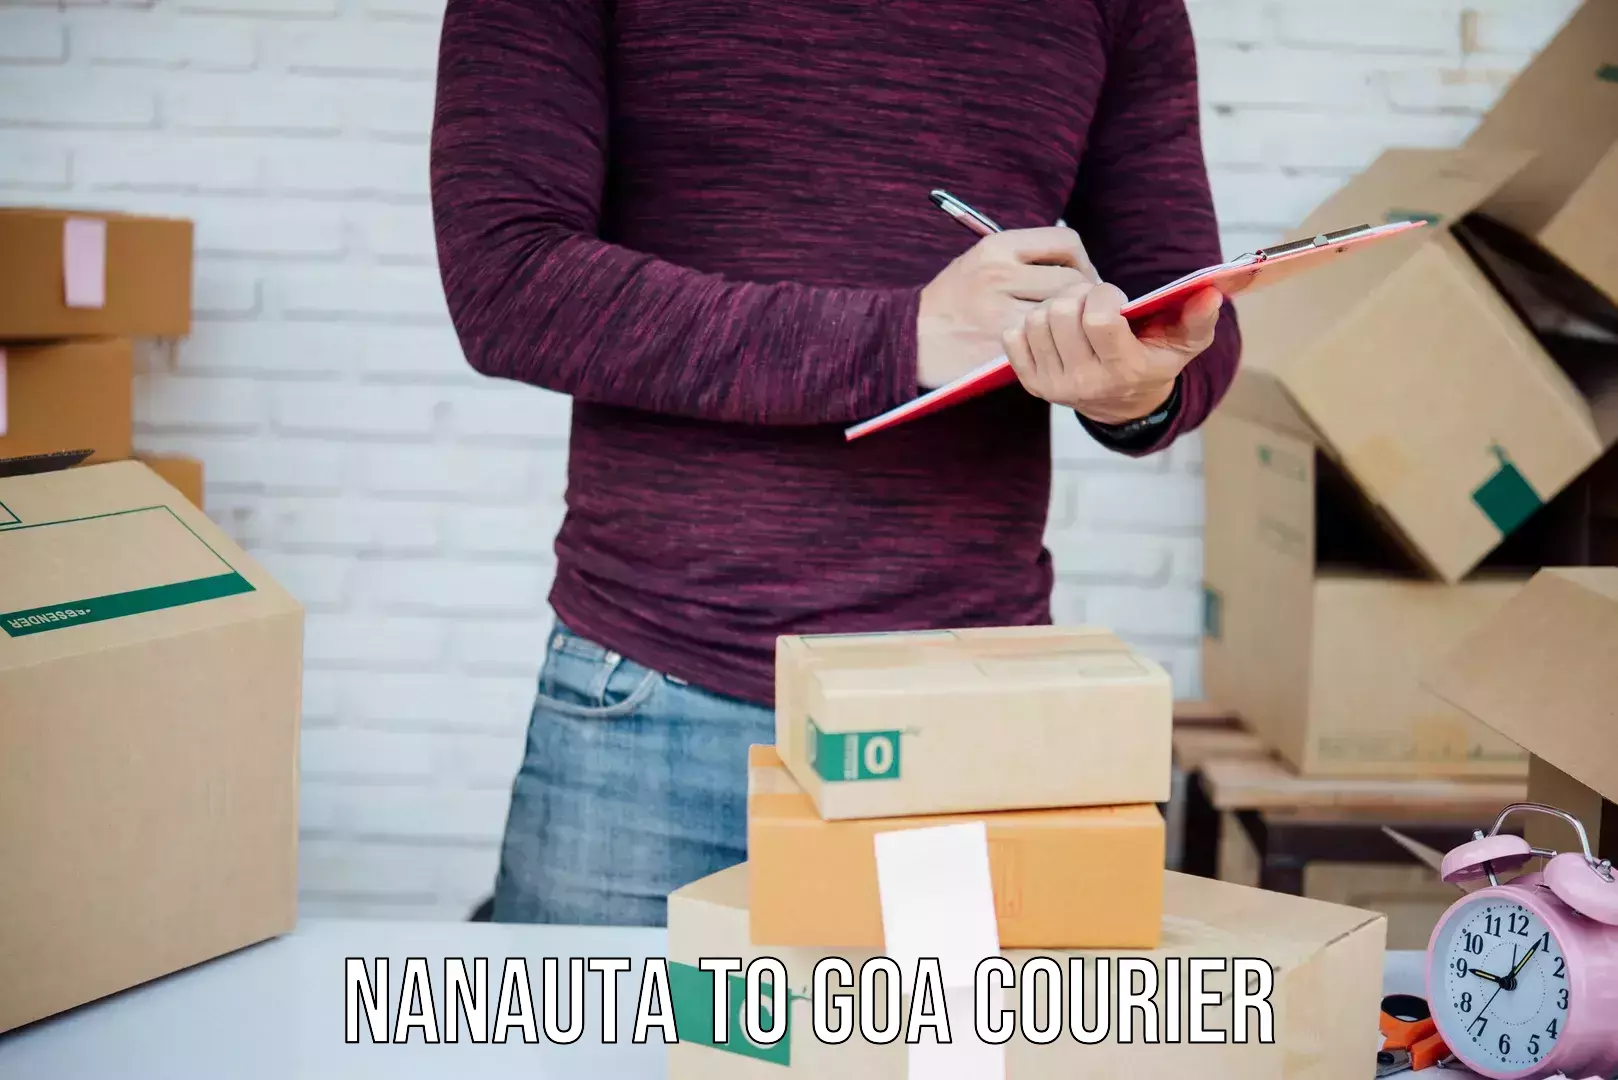 Residential courier service Nanauta to Goa